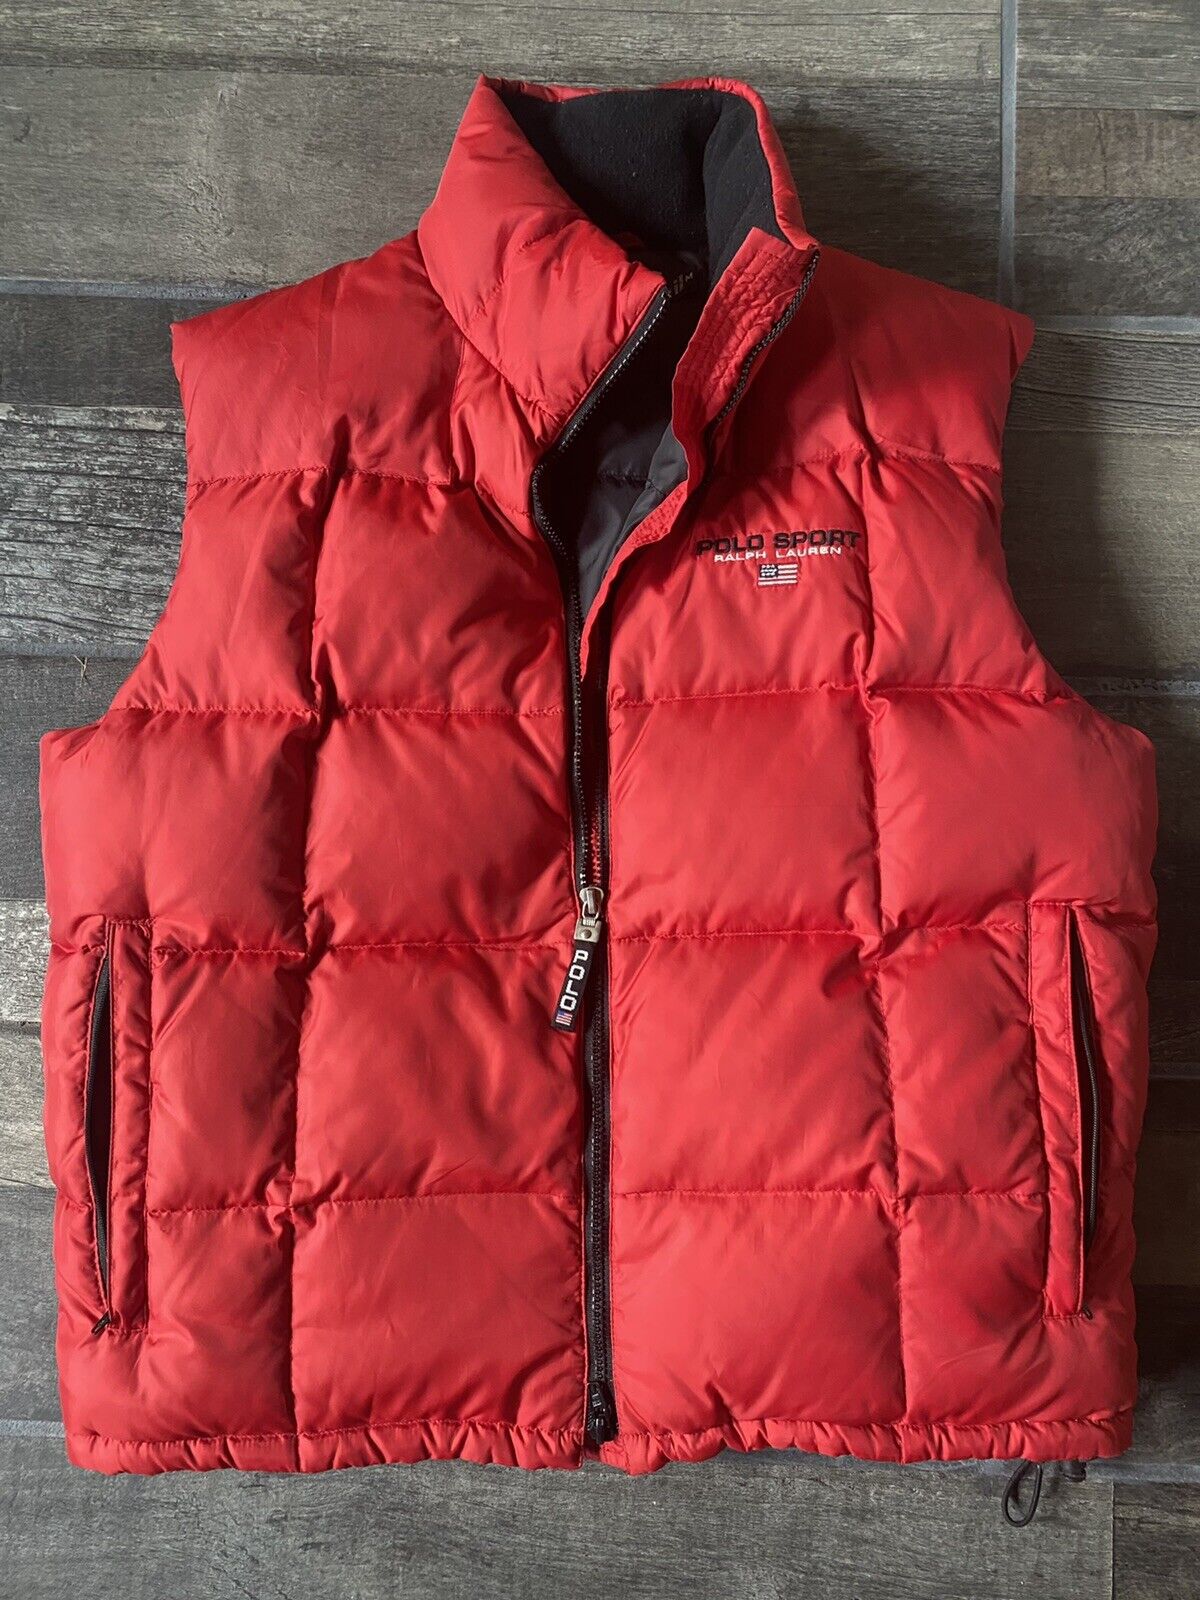 rare vtg 90s ralph lauren polo sport red puffer vest size medium